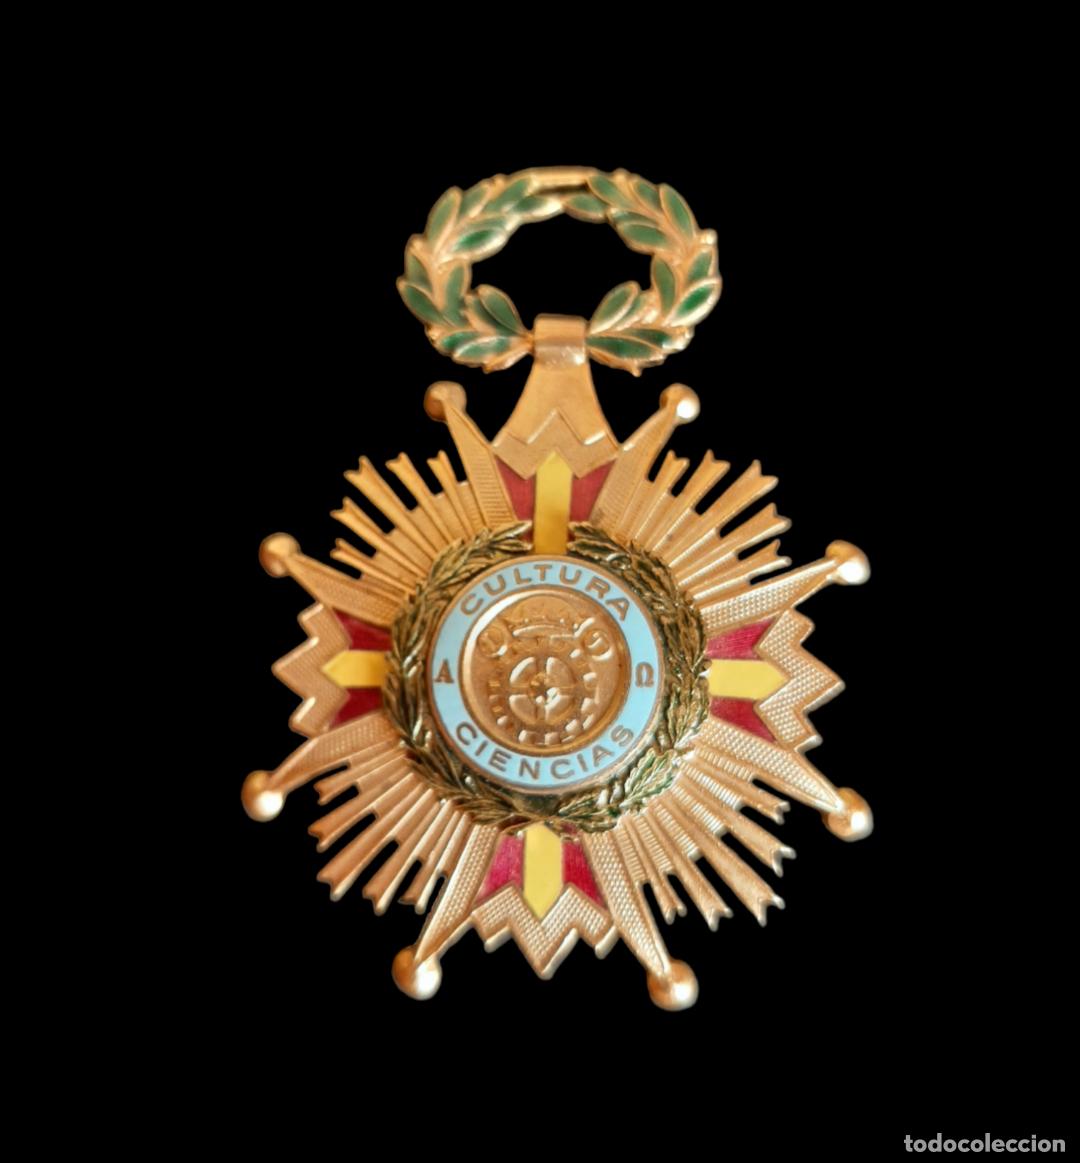 lote de medallas de un militar español - Acheter Médailles militaires  espagnoles anciennes sur todocoleccion